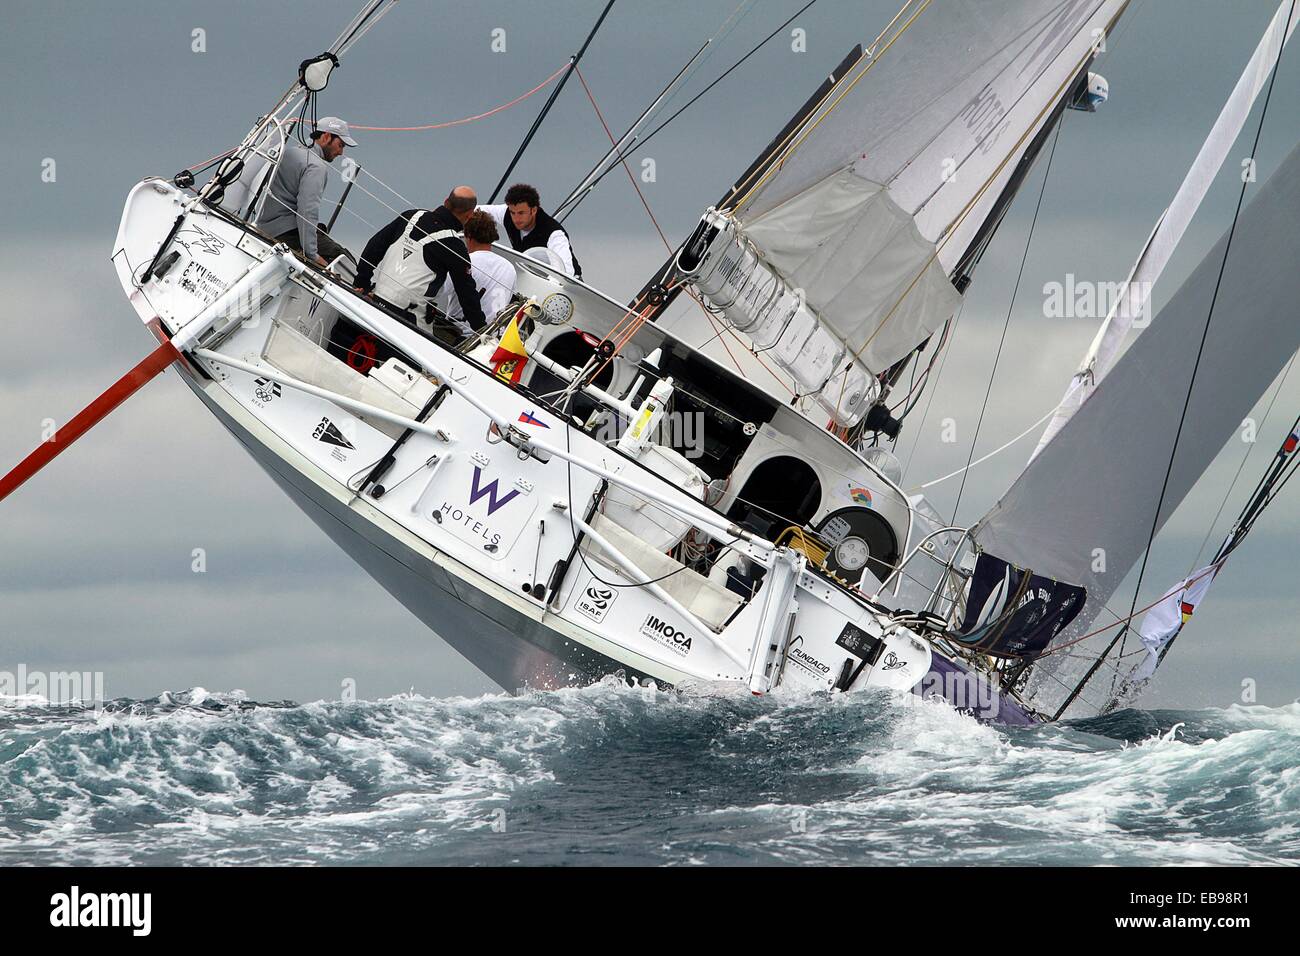 ocean racing sailboat